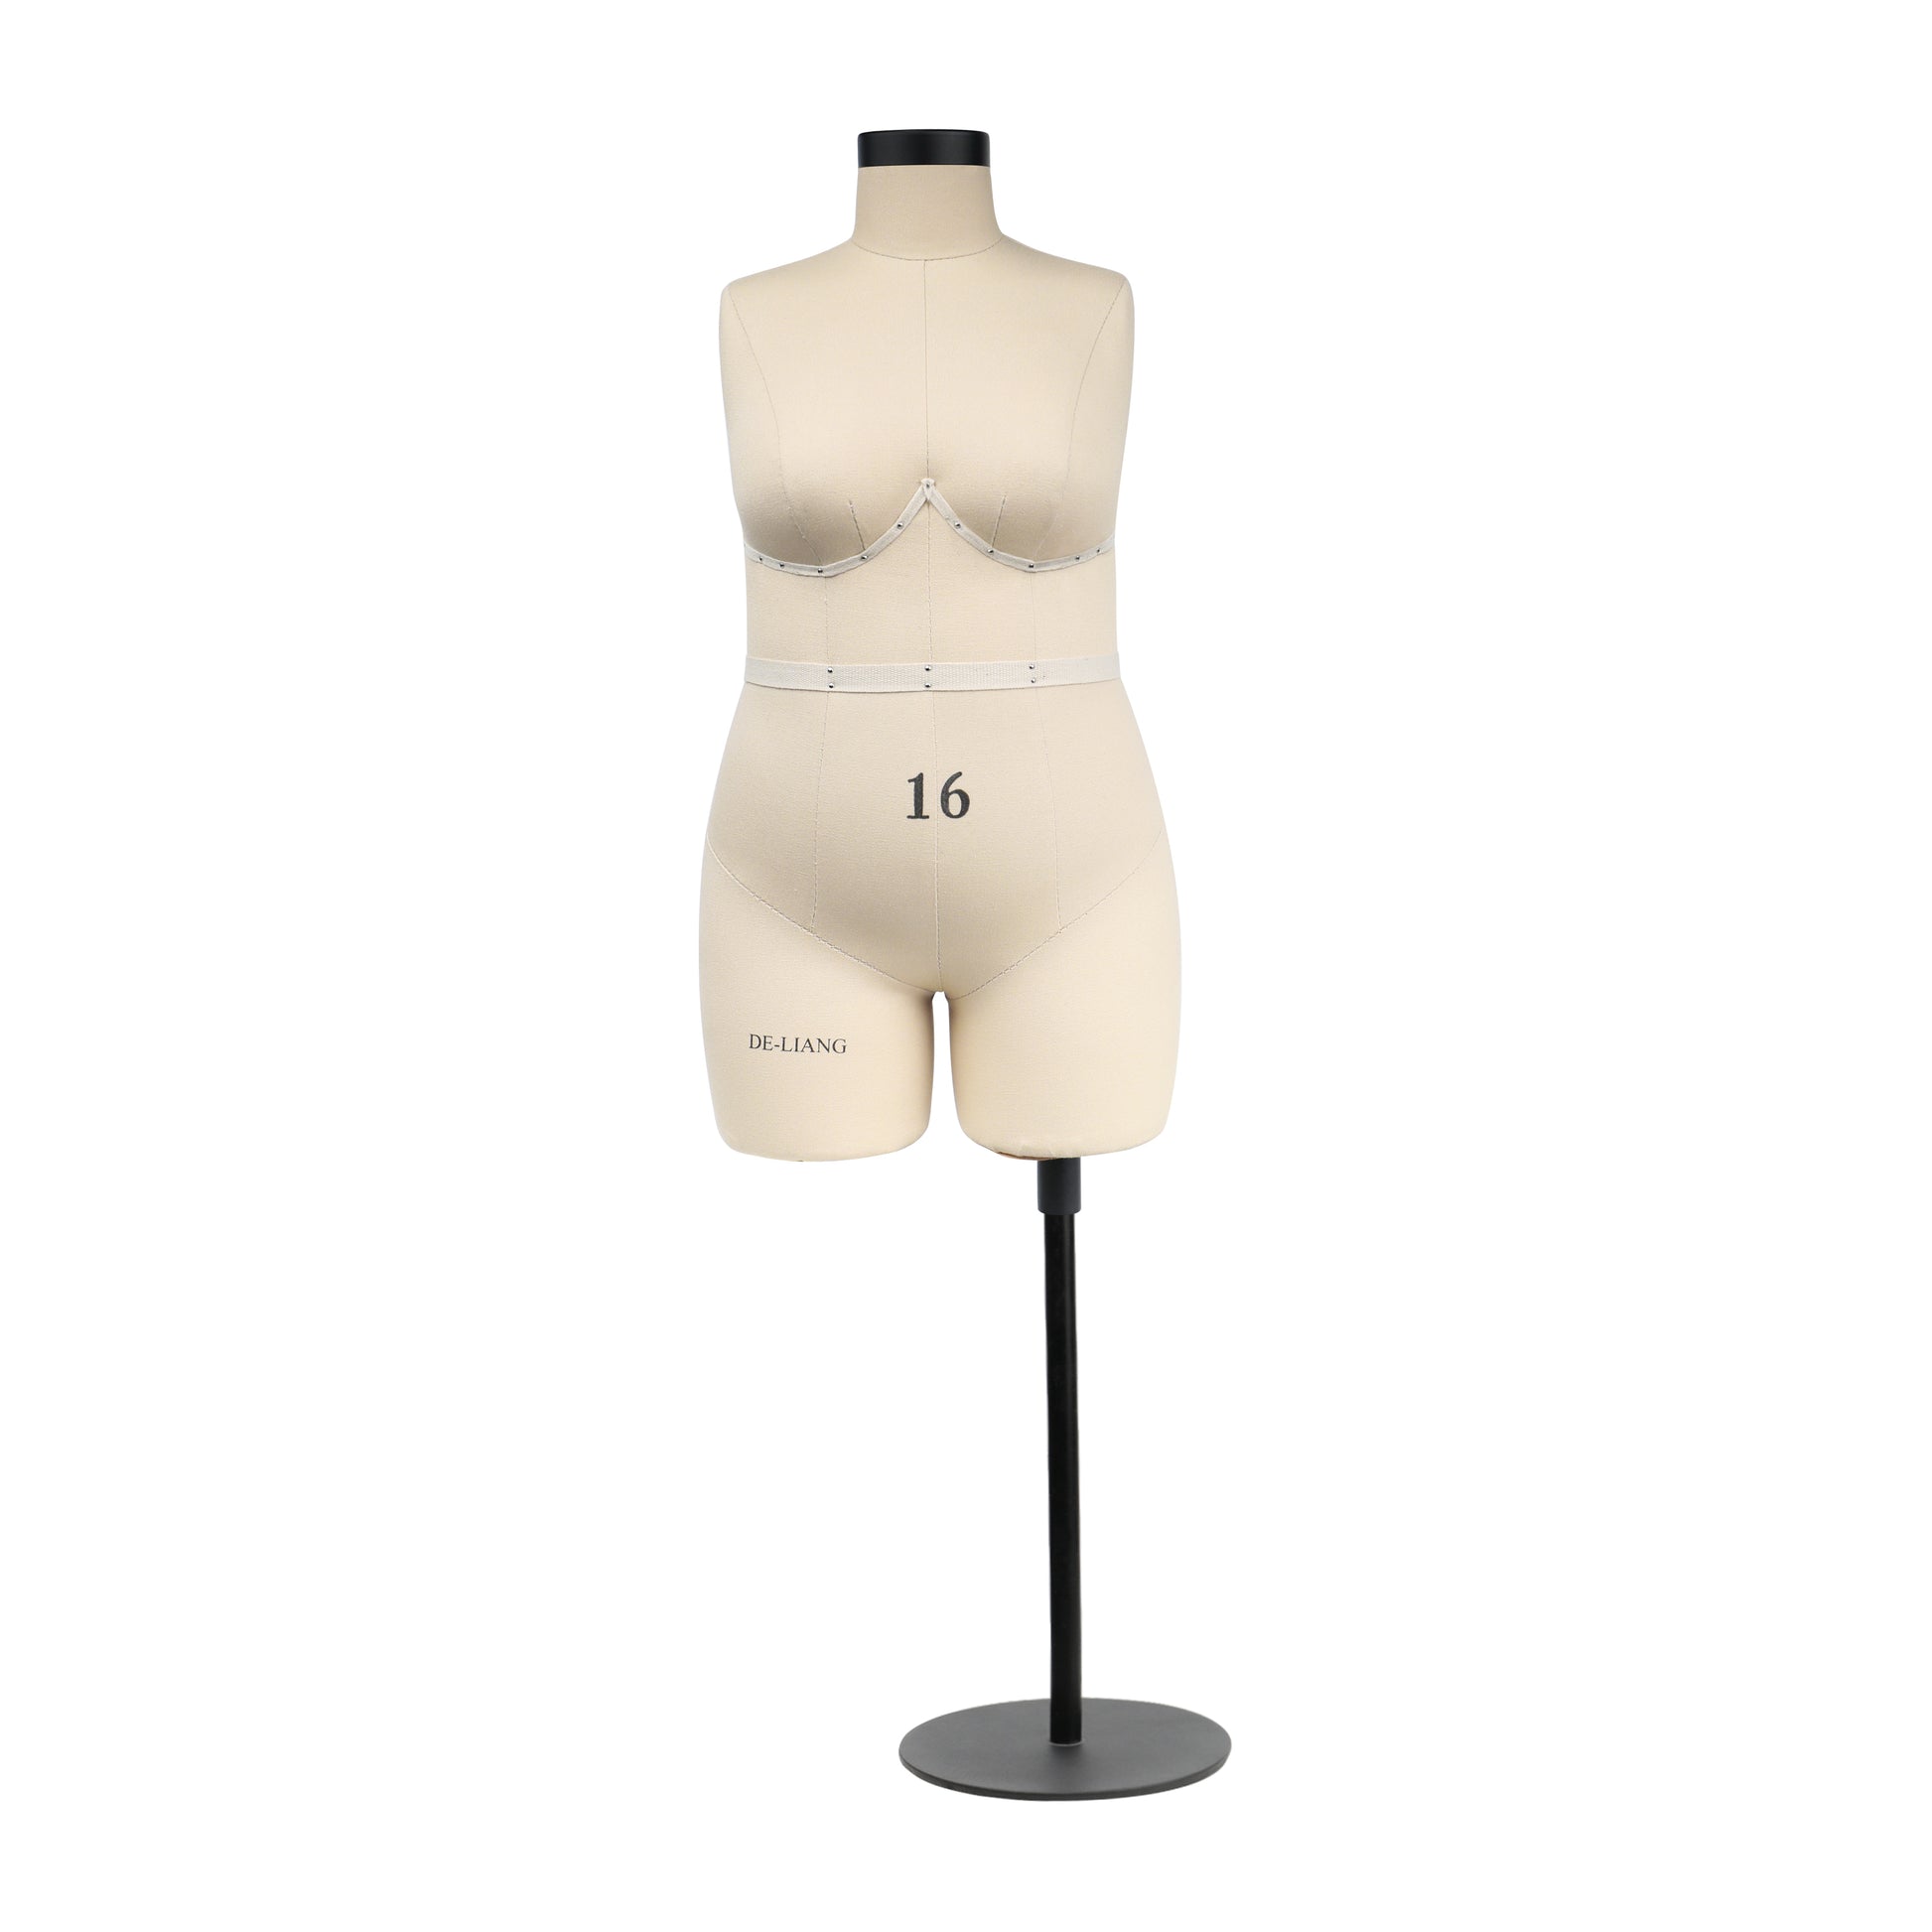 DE-LIANG Half scale dress form, DL268 plus size 16 woman mannequin, dressmaker dummy, tailor female mannequin, 16 scale miniature  NOT ADULT size. DE-LIANG